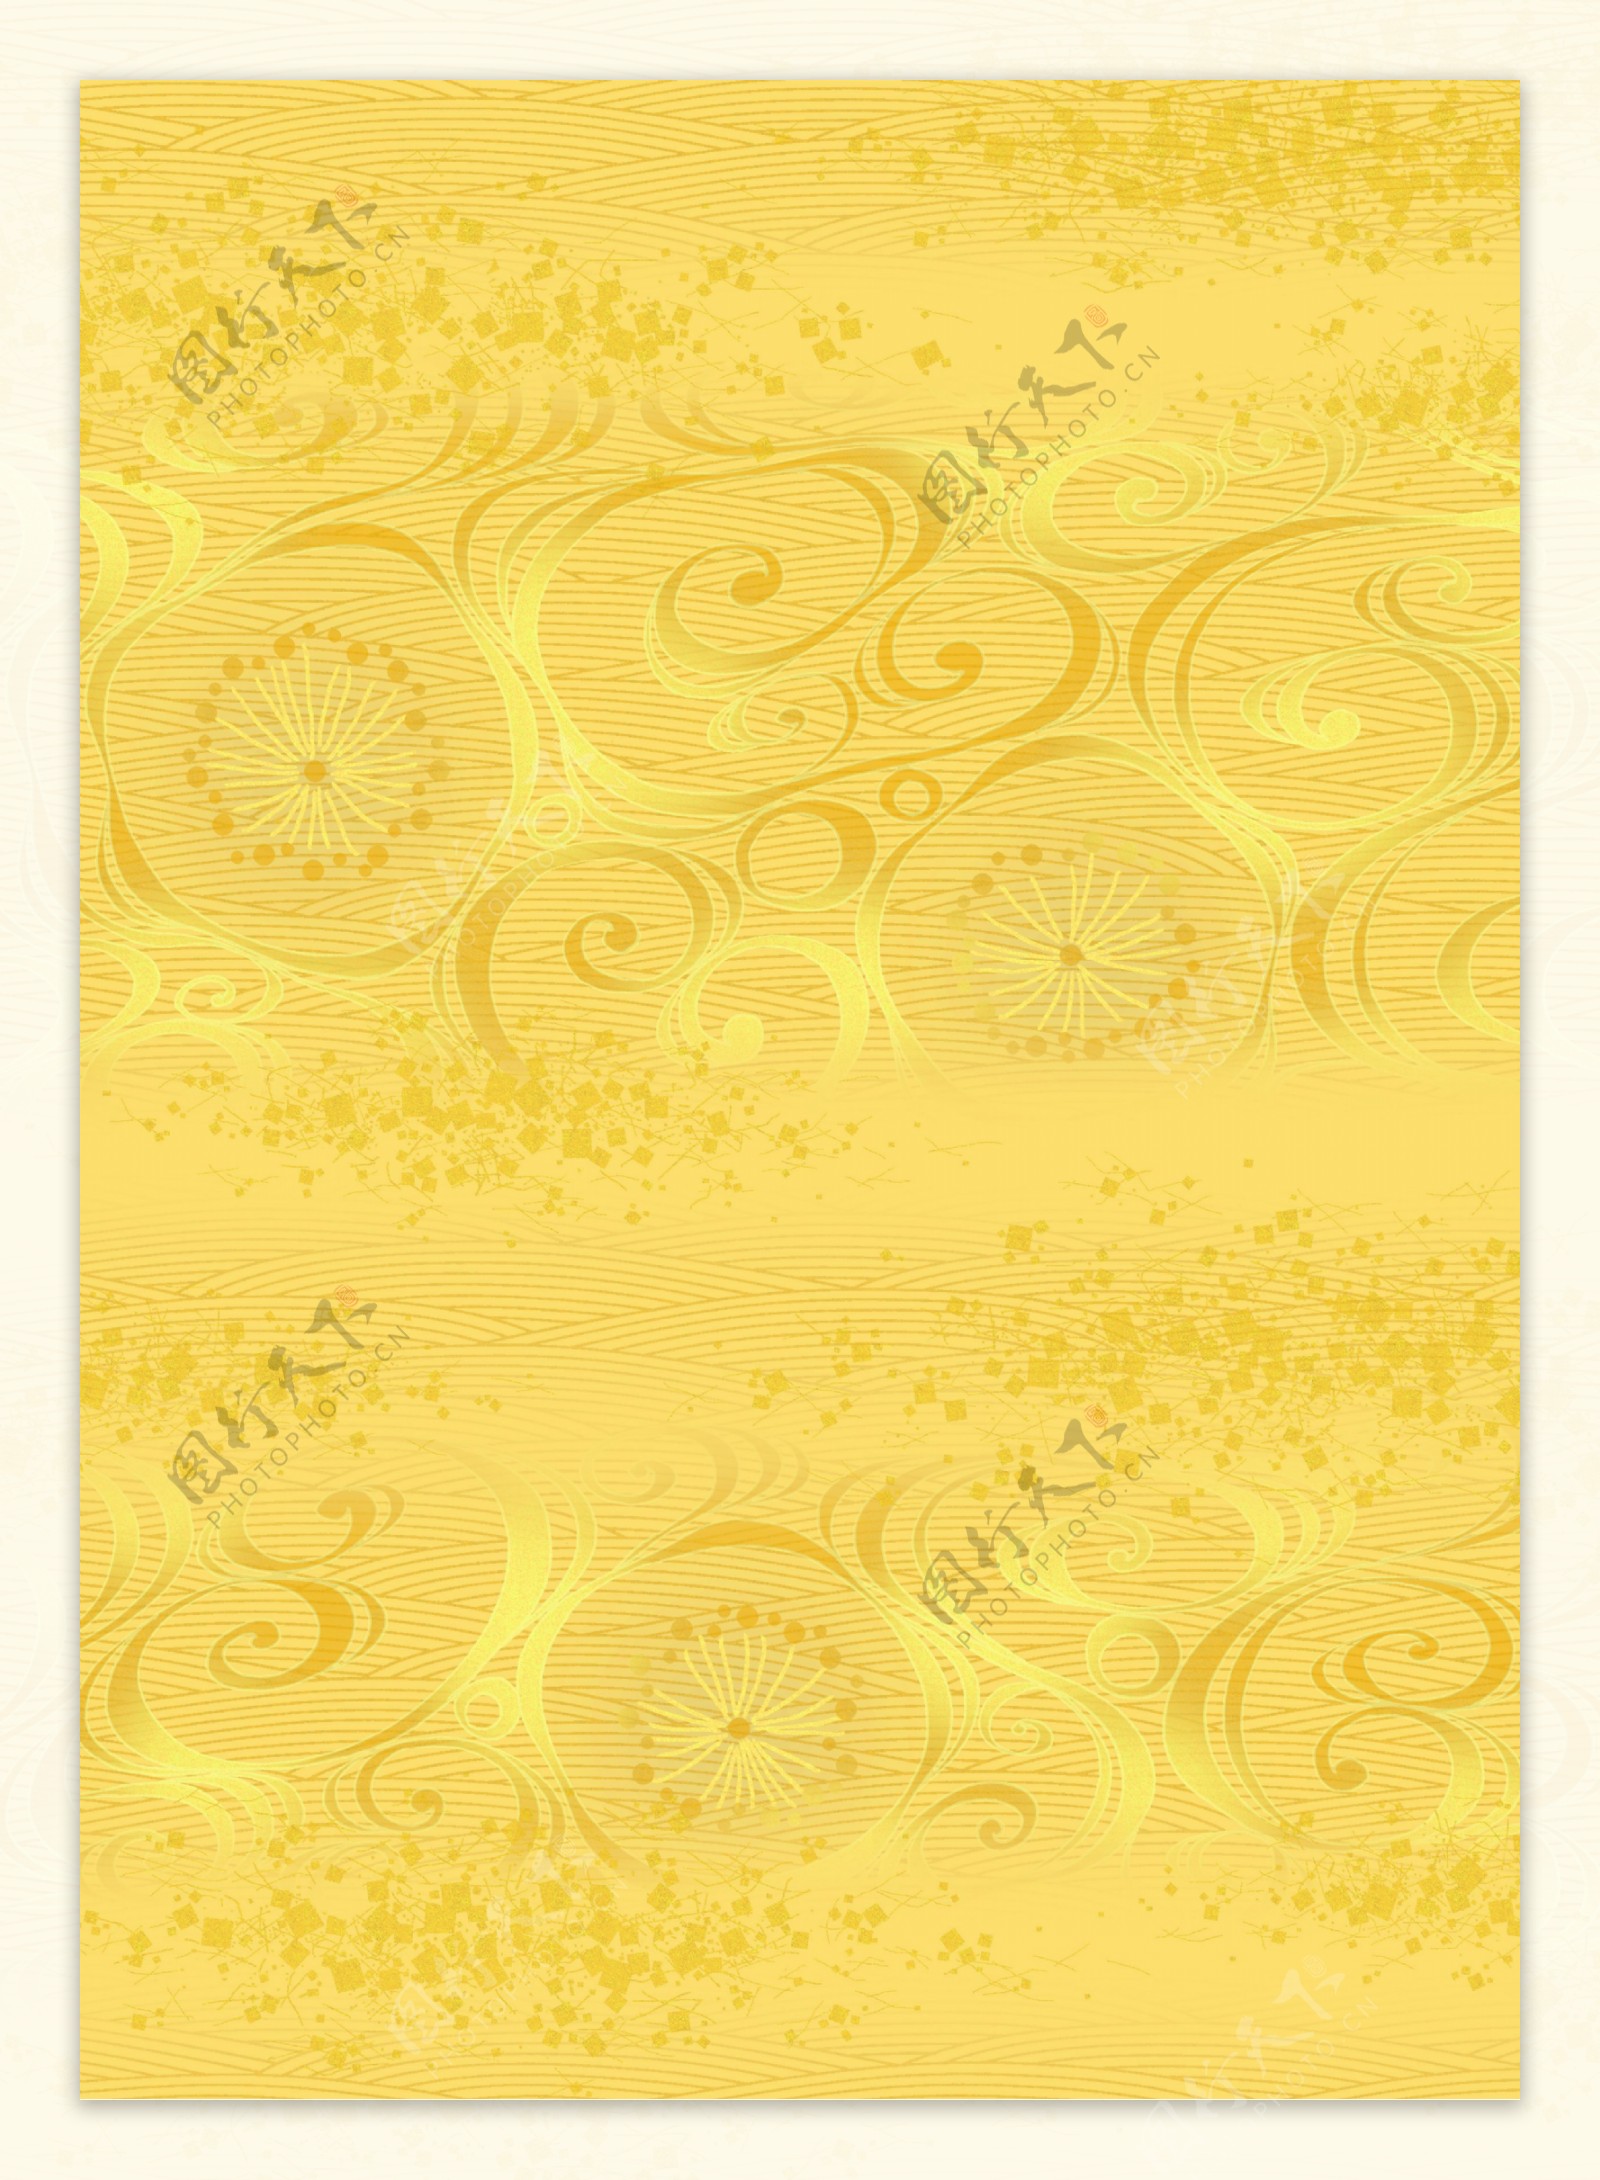 黄色欧式花纹图案背景